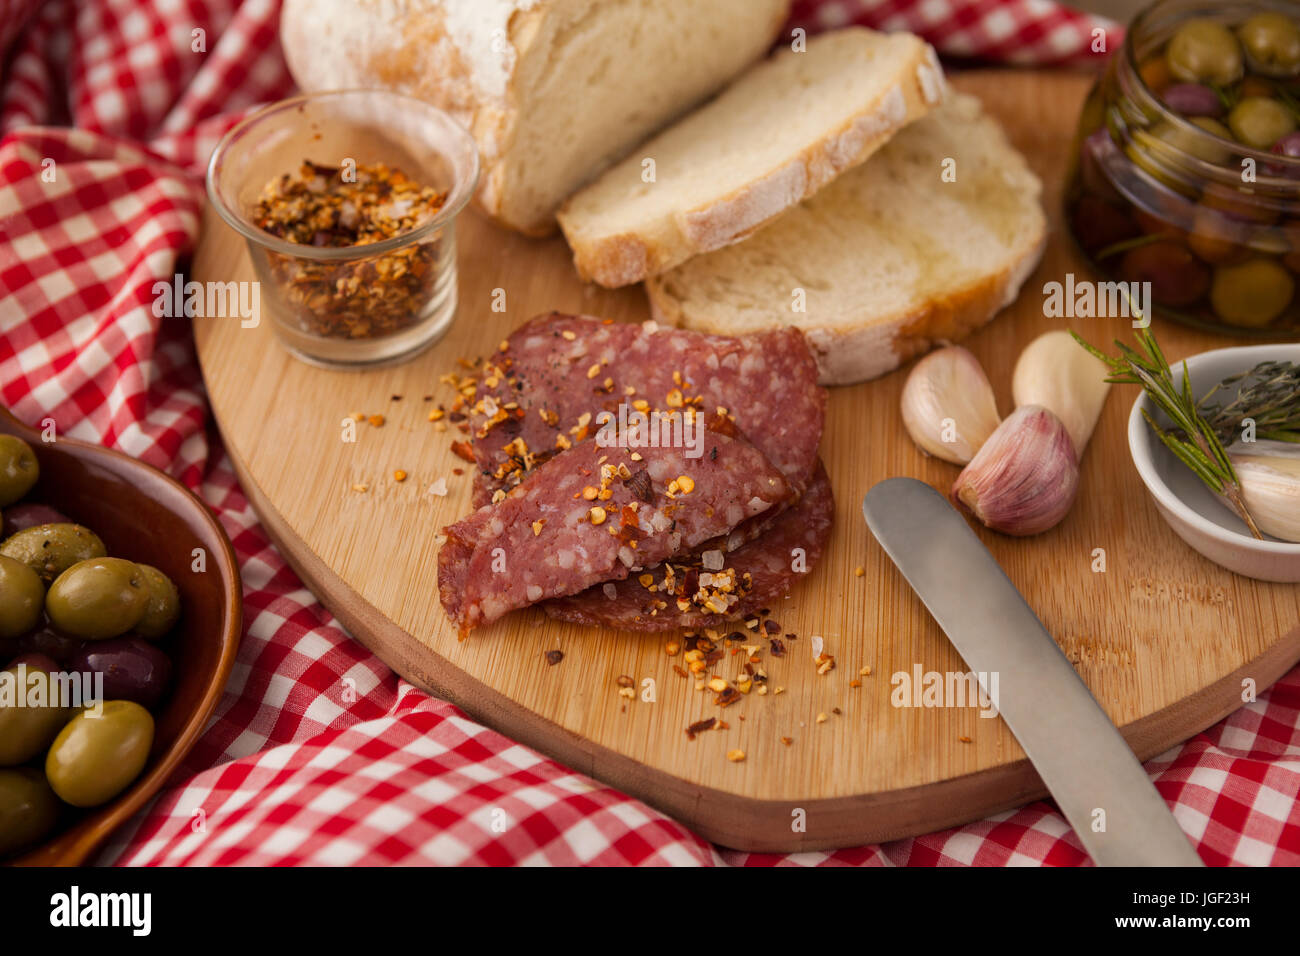 Chili-Flocken auf Fleisch vom Brot mit Oliven im Glas am Tisch Stockfoto